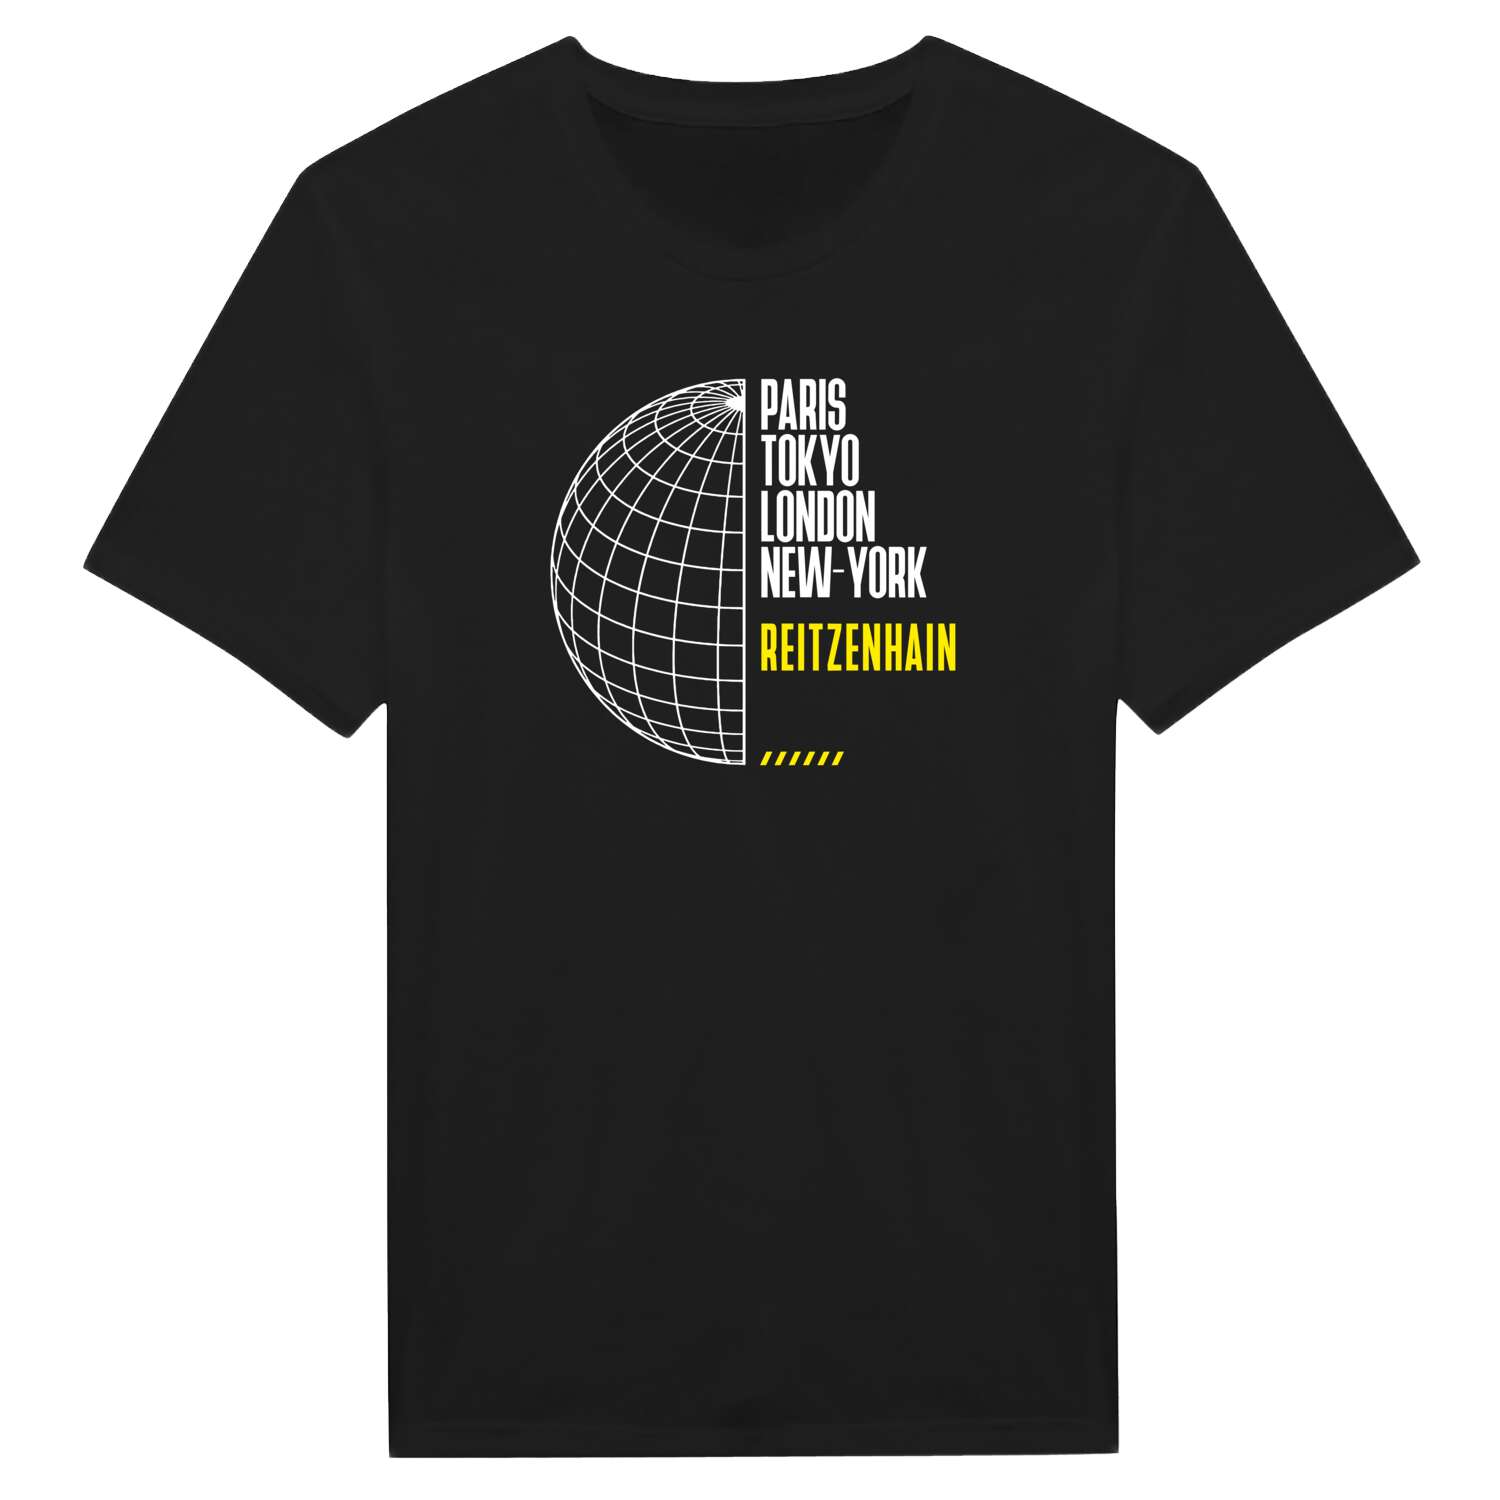 Reitzenhain T-Shirt »Paris Tokyo London«